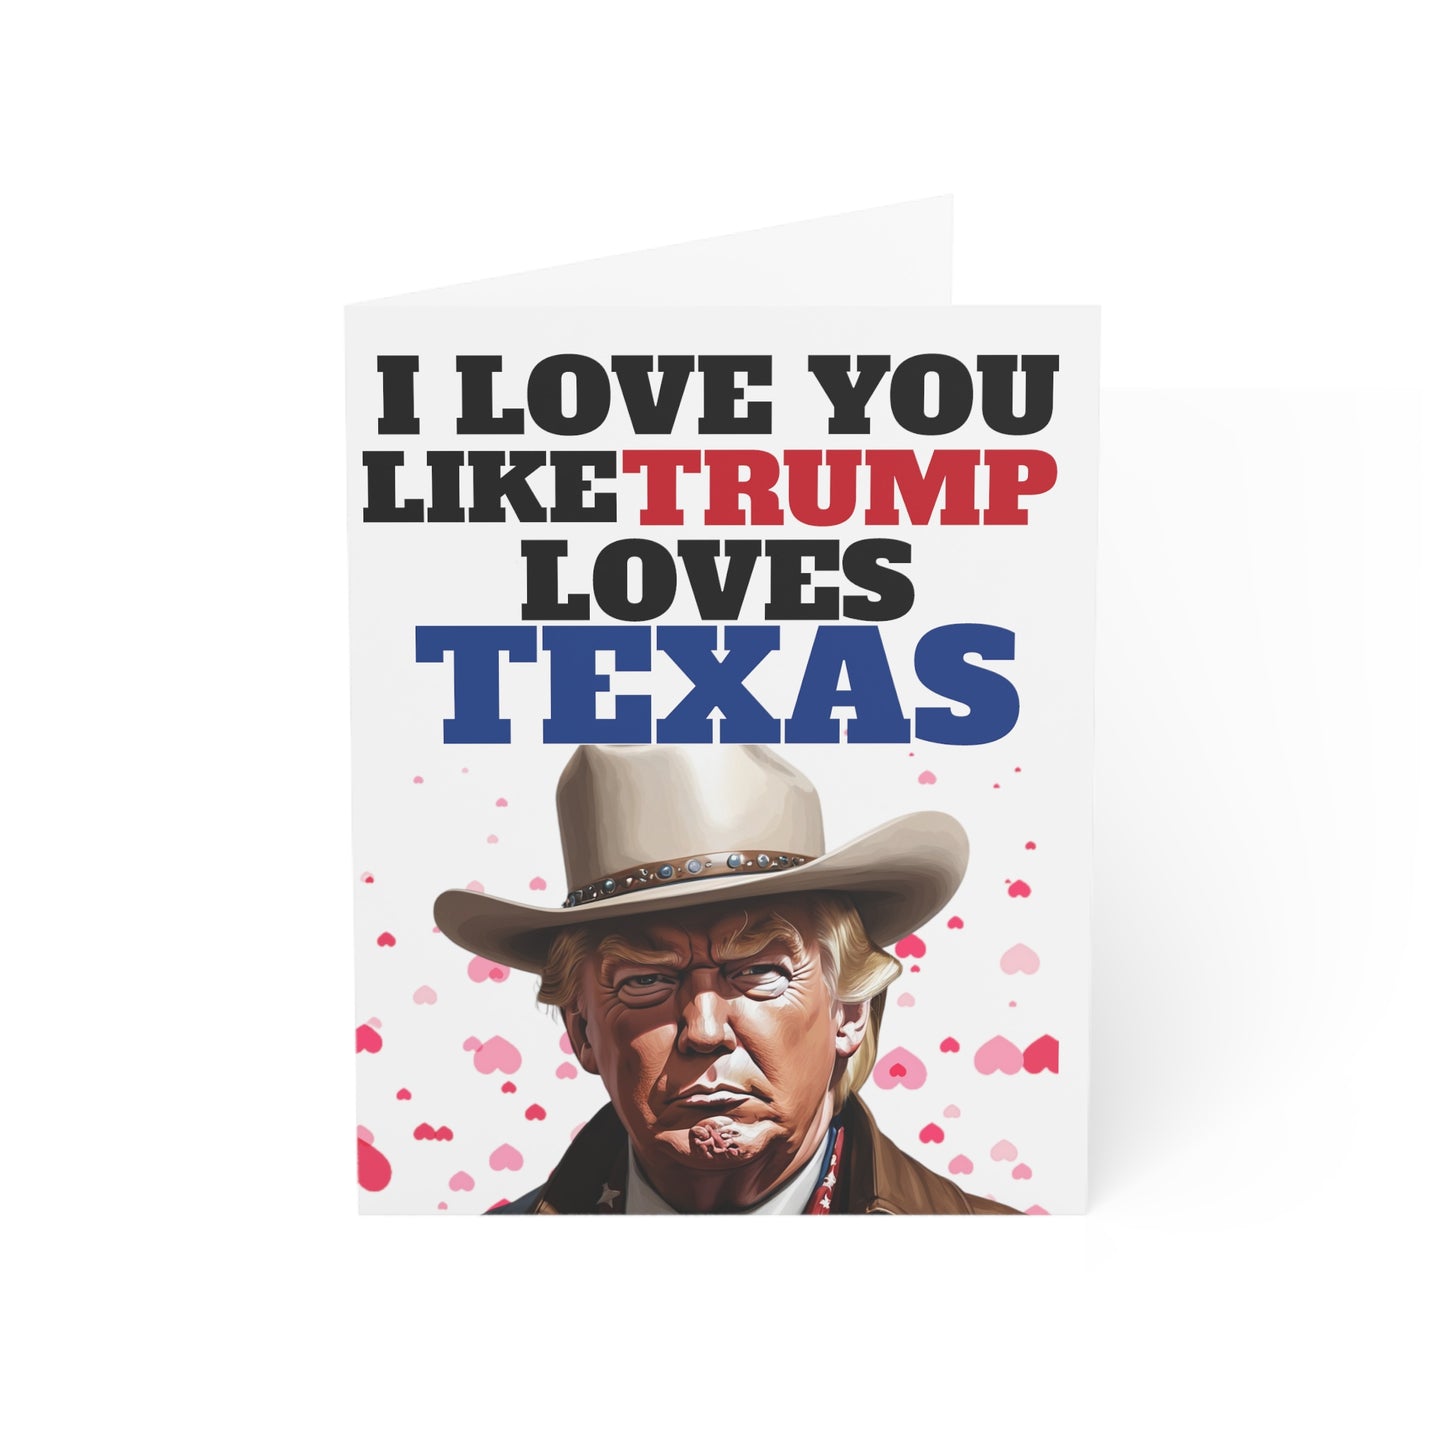 Ich liebe dich, wie Trump Texas liebt. MAGA-Jubiläums- oder Muttertagskartengeschenk